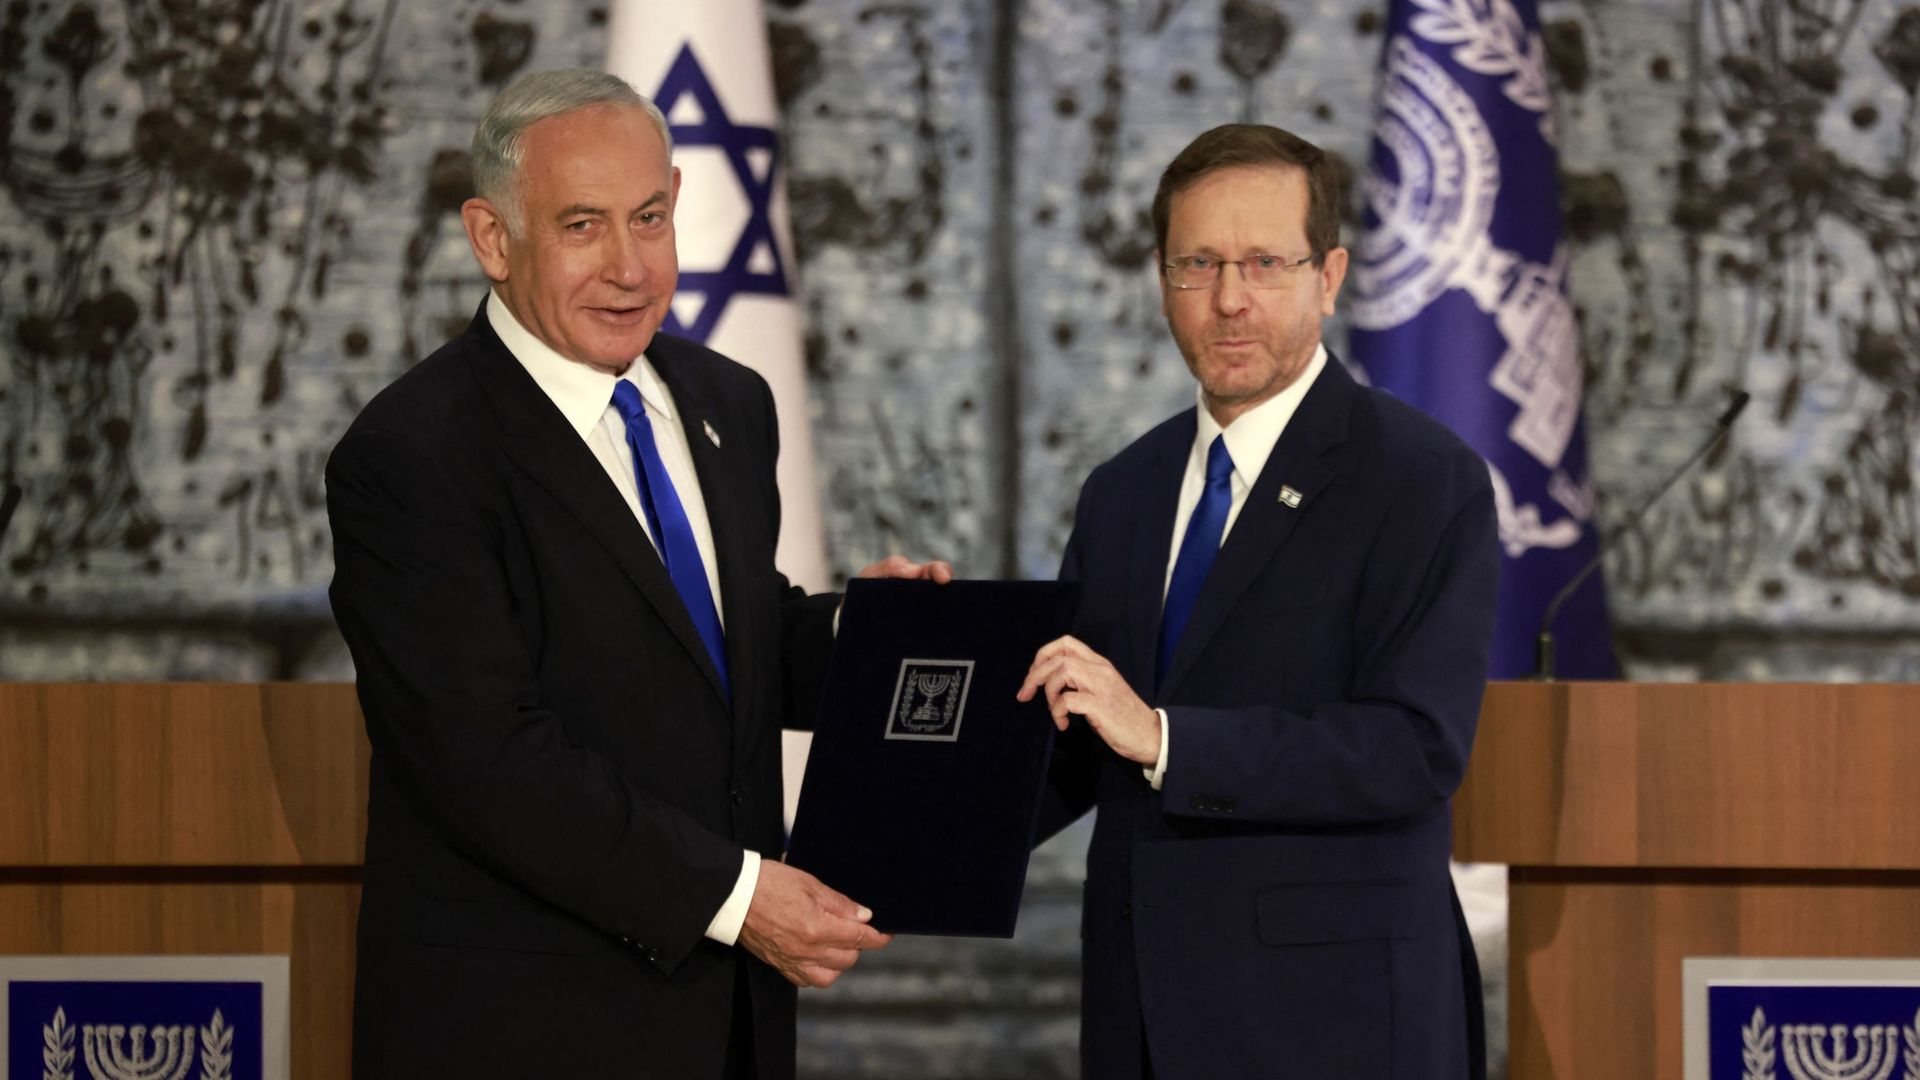 Le président israélien Isaac Herzog (à droite) et le président du Likoud Benjamin Netanyahu posent pour une photo après que le premier a chargé le second de former un nouveau gouvernement, à Jérusalem, le 13 novembre 2022.